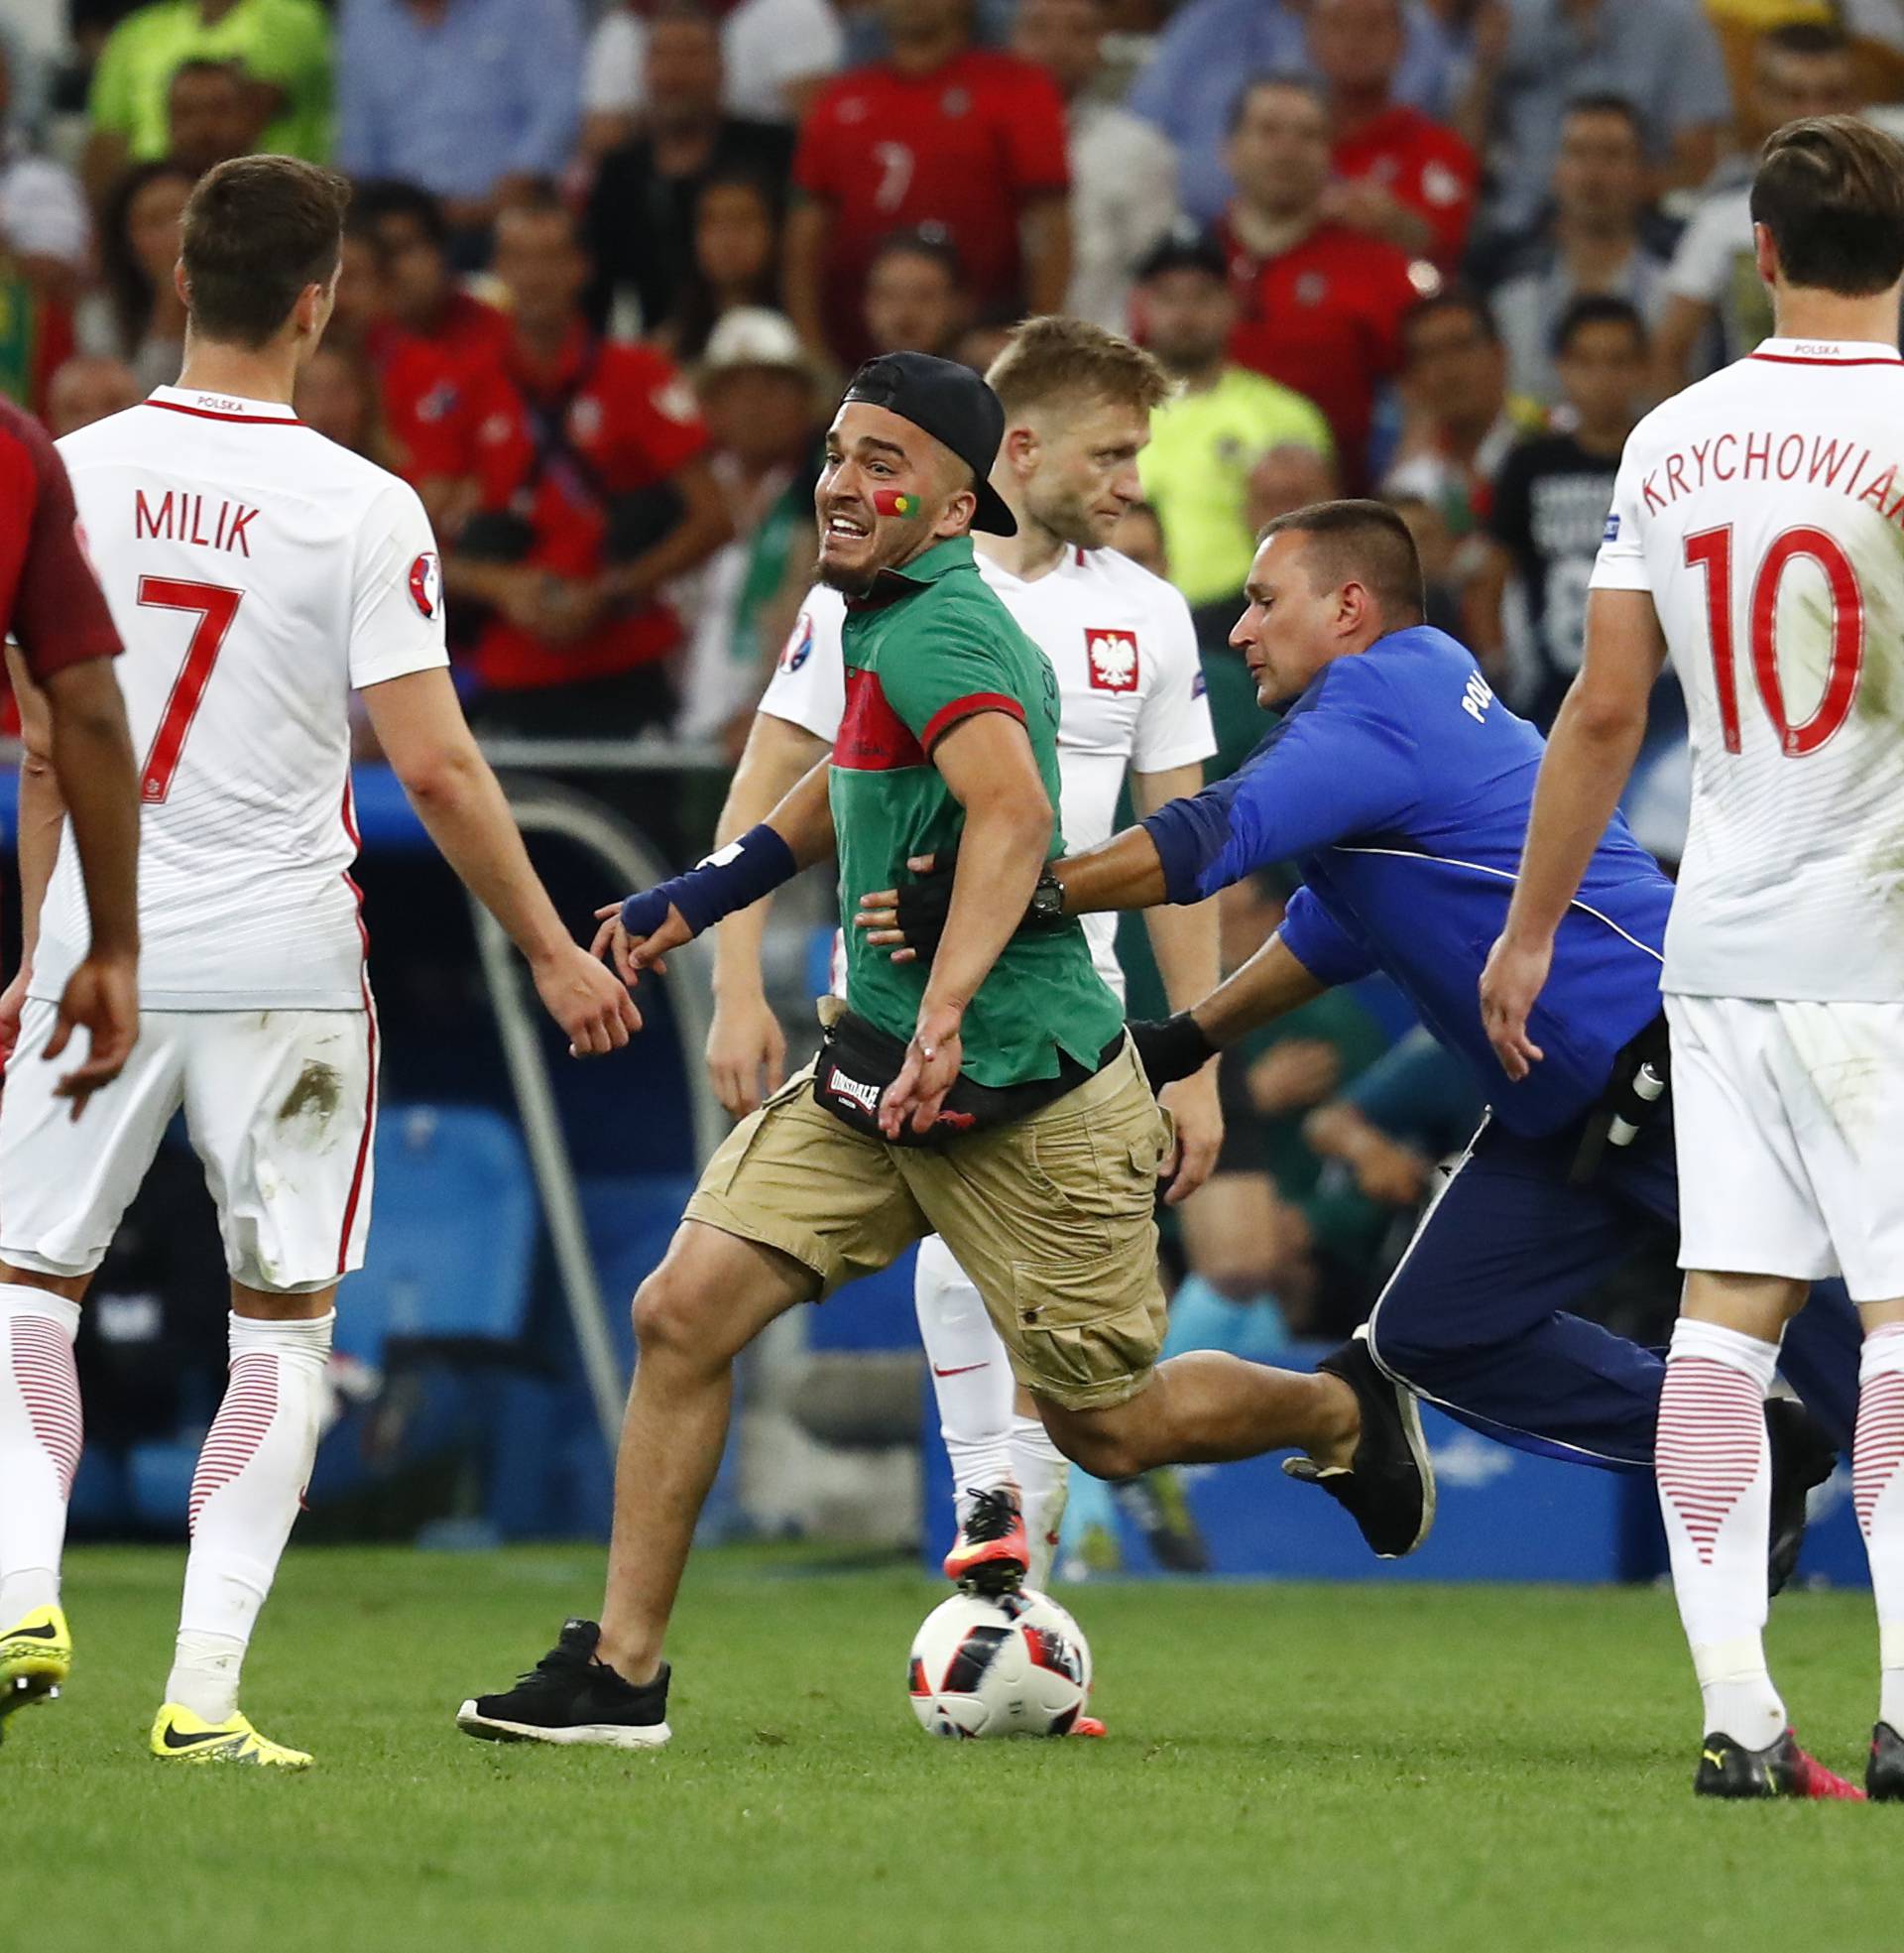 Poland v Portugal - EURO 2016 - Quarter Final